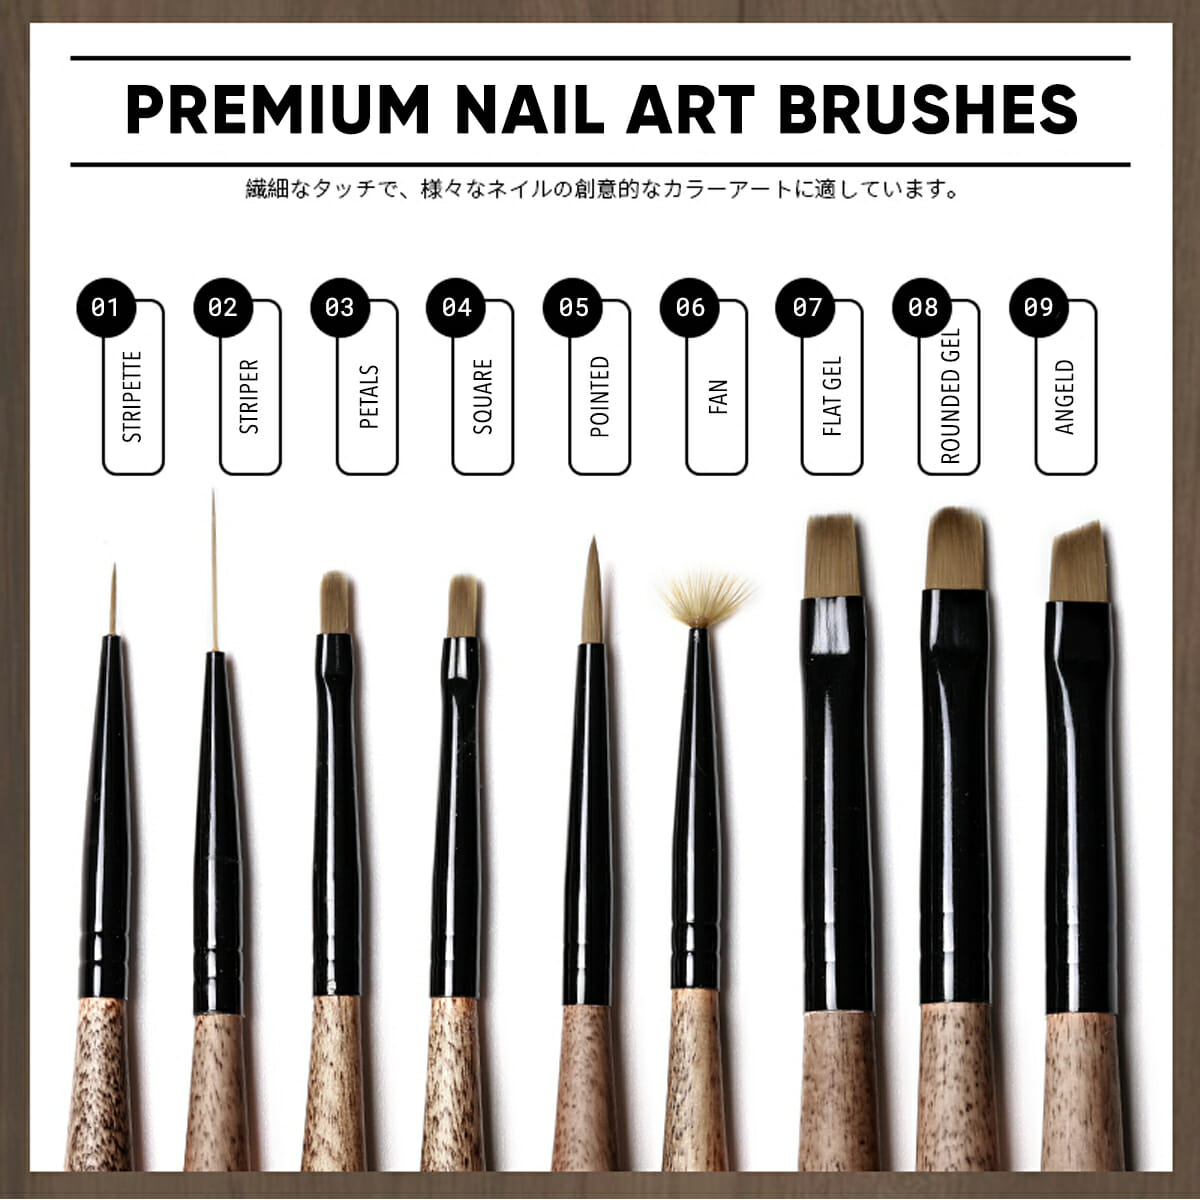 AnotherSexy Nail Art Premium Brushes 1